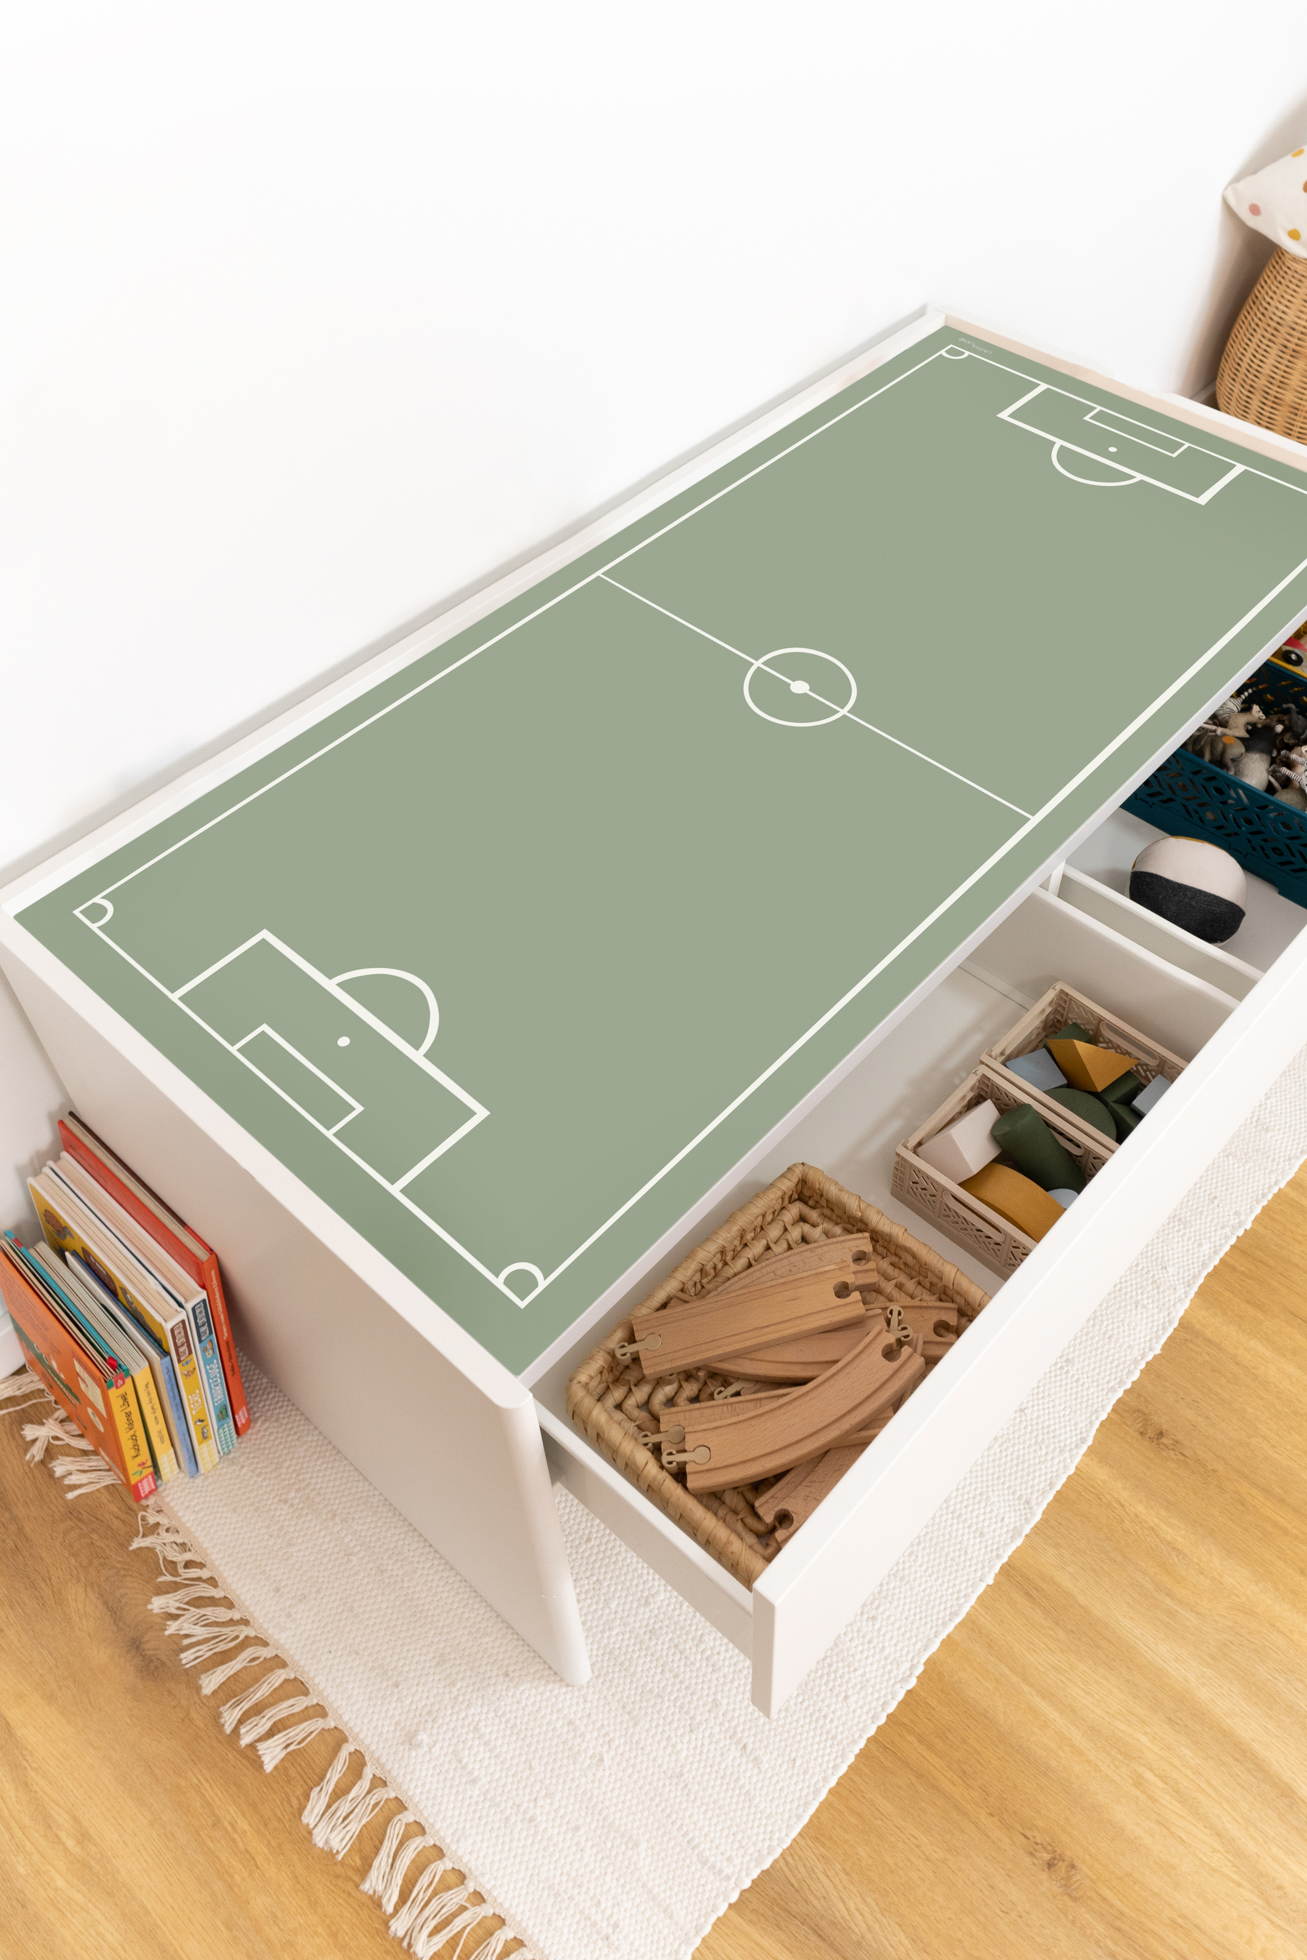 Ikea Dundra Klebefolie als Fußball Deko für dein Fußball Kinderzimmer als Fußballzimmer Deko mit Fußballmotiven passend für die Fußball EM